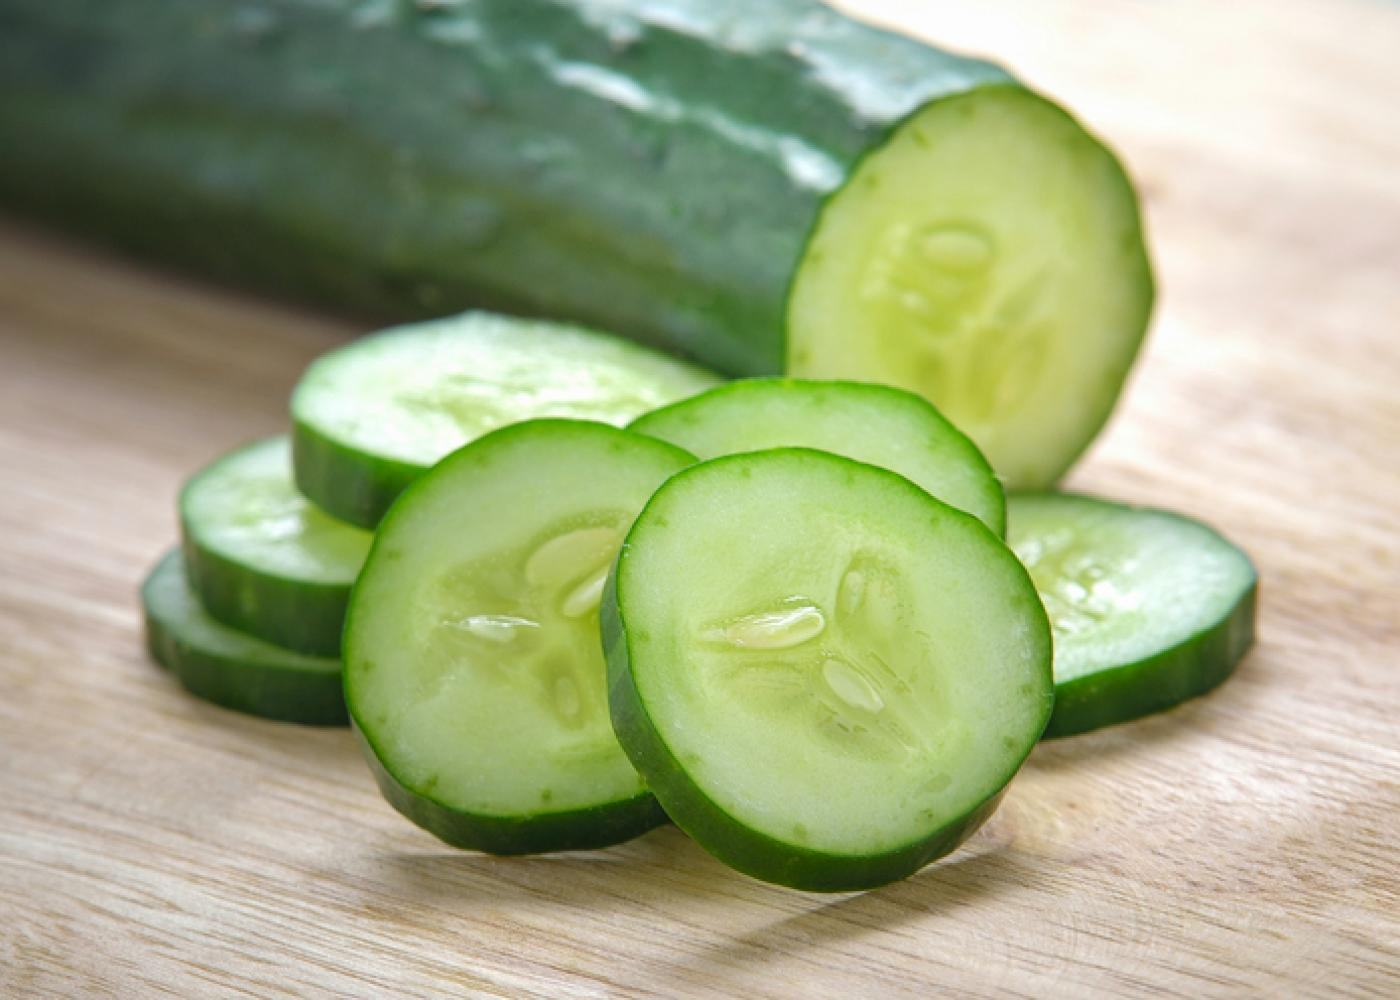 slicing cucumbers